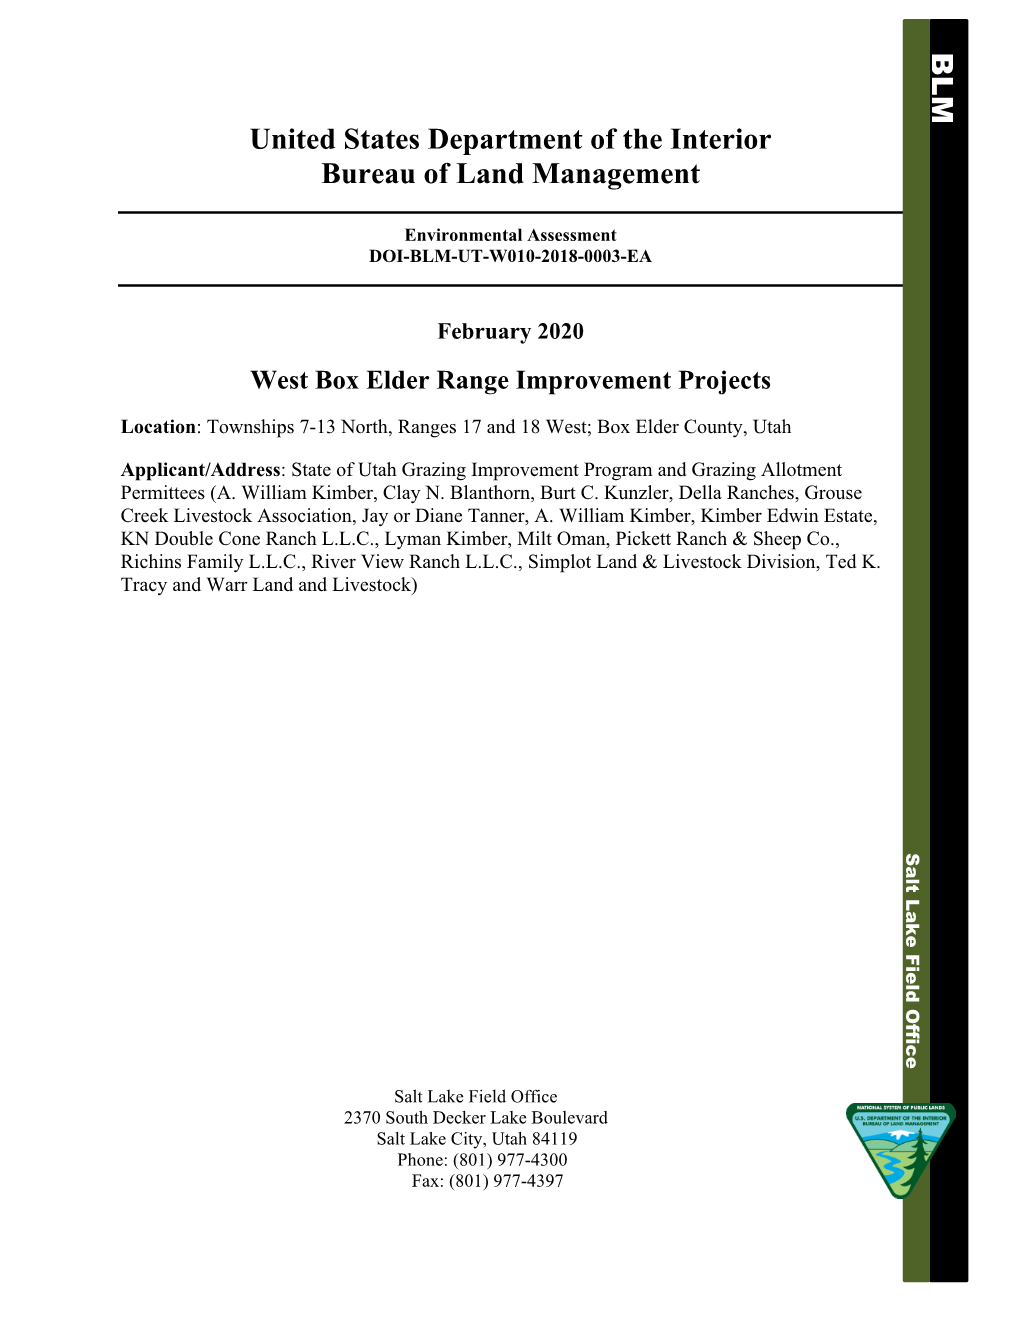 Environmental Assessment DOI-BLM-UT-W010-2018-0003-EA